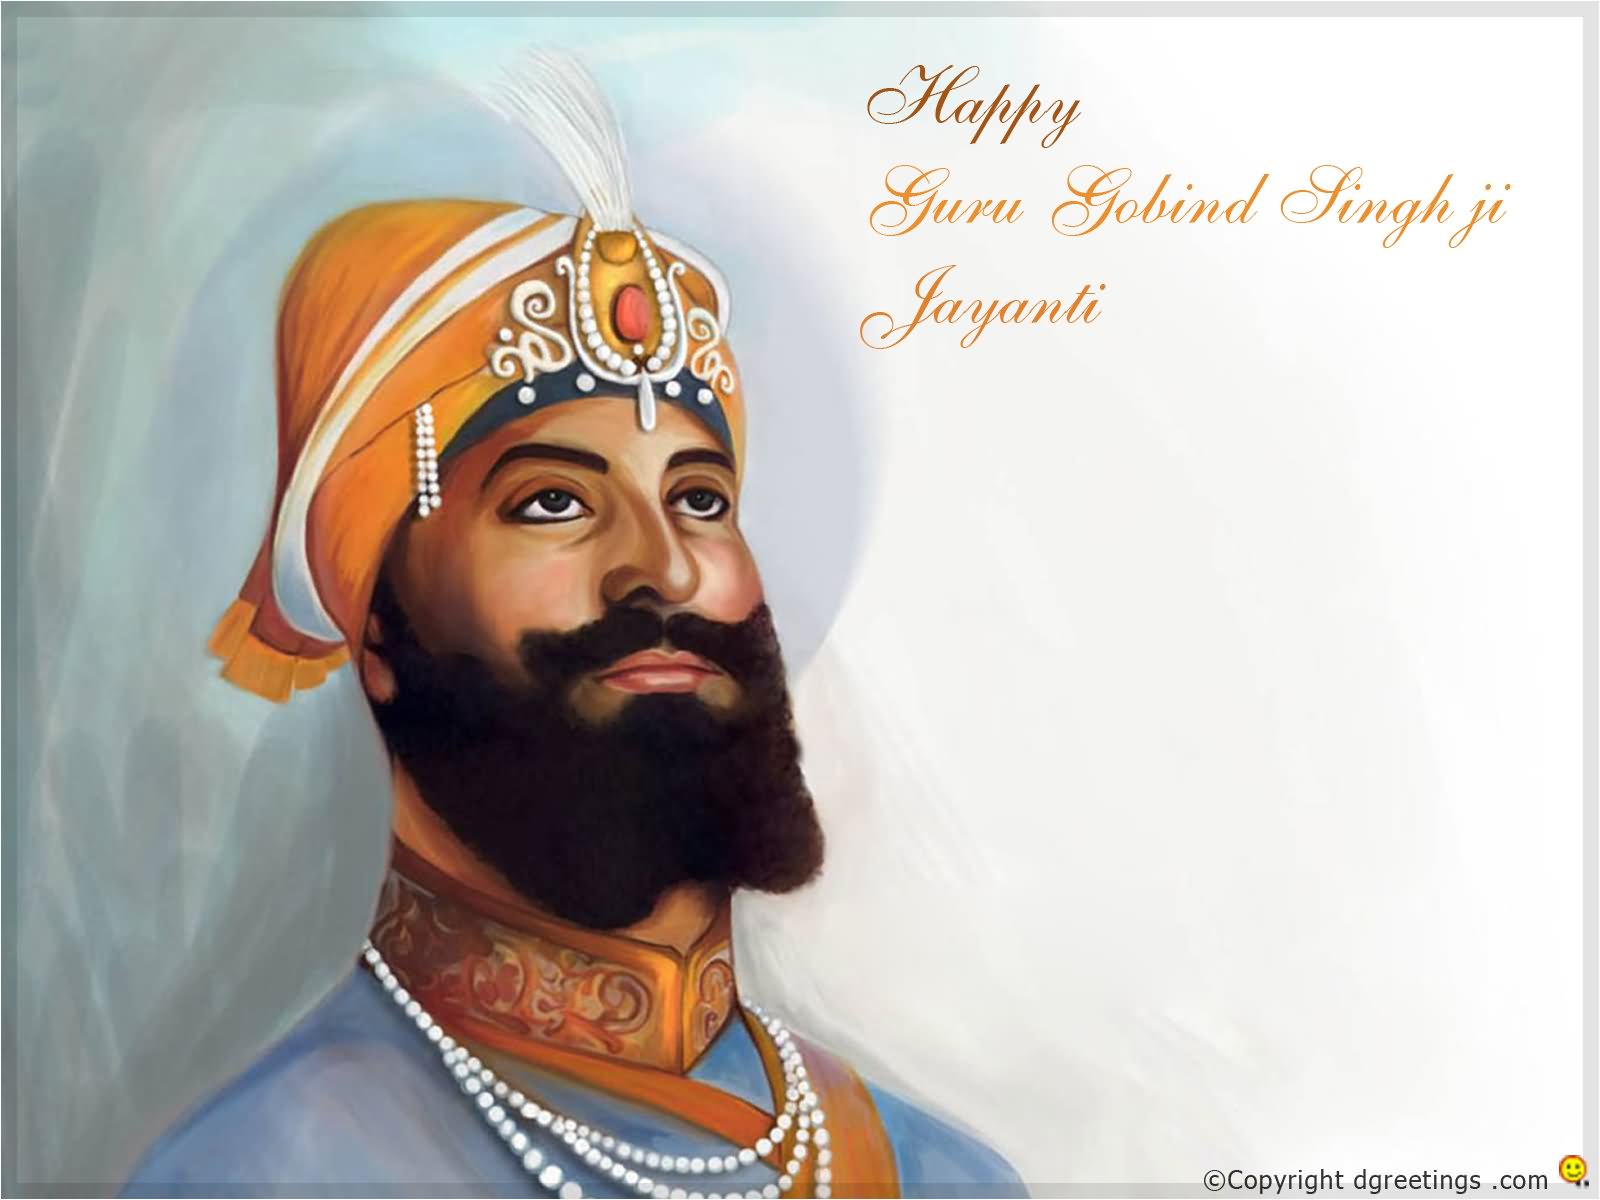 Happy Guru Gobind Singh Ji Jayanti